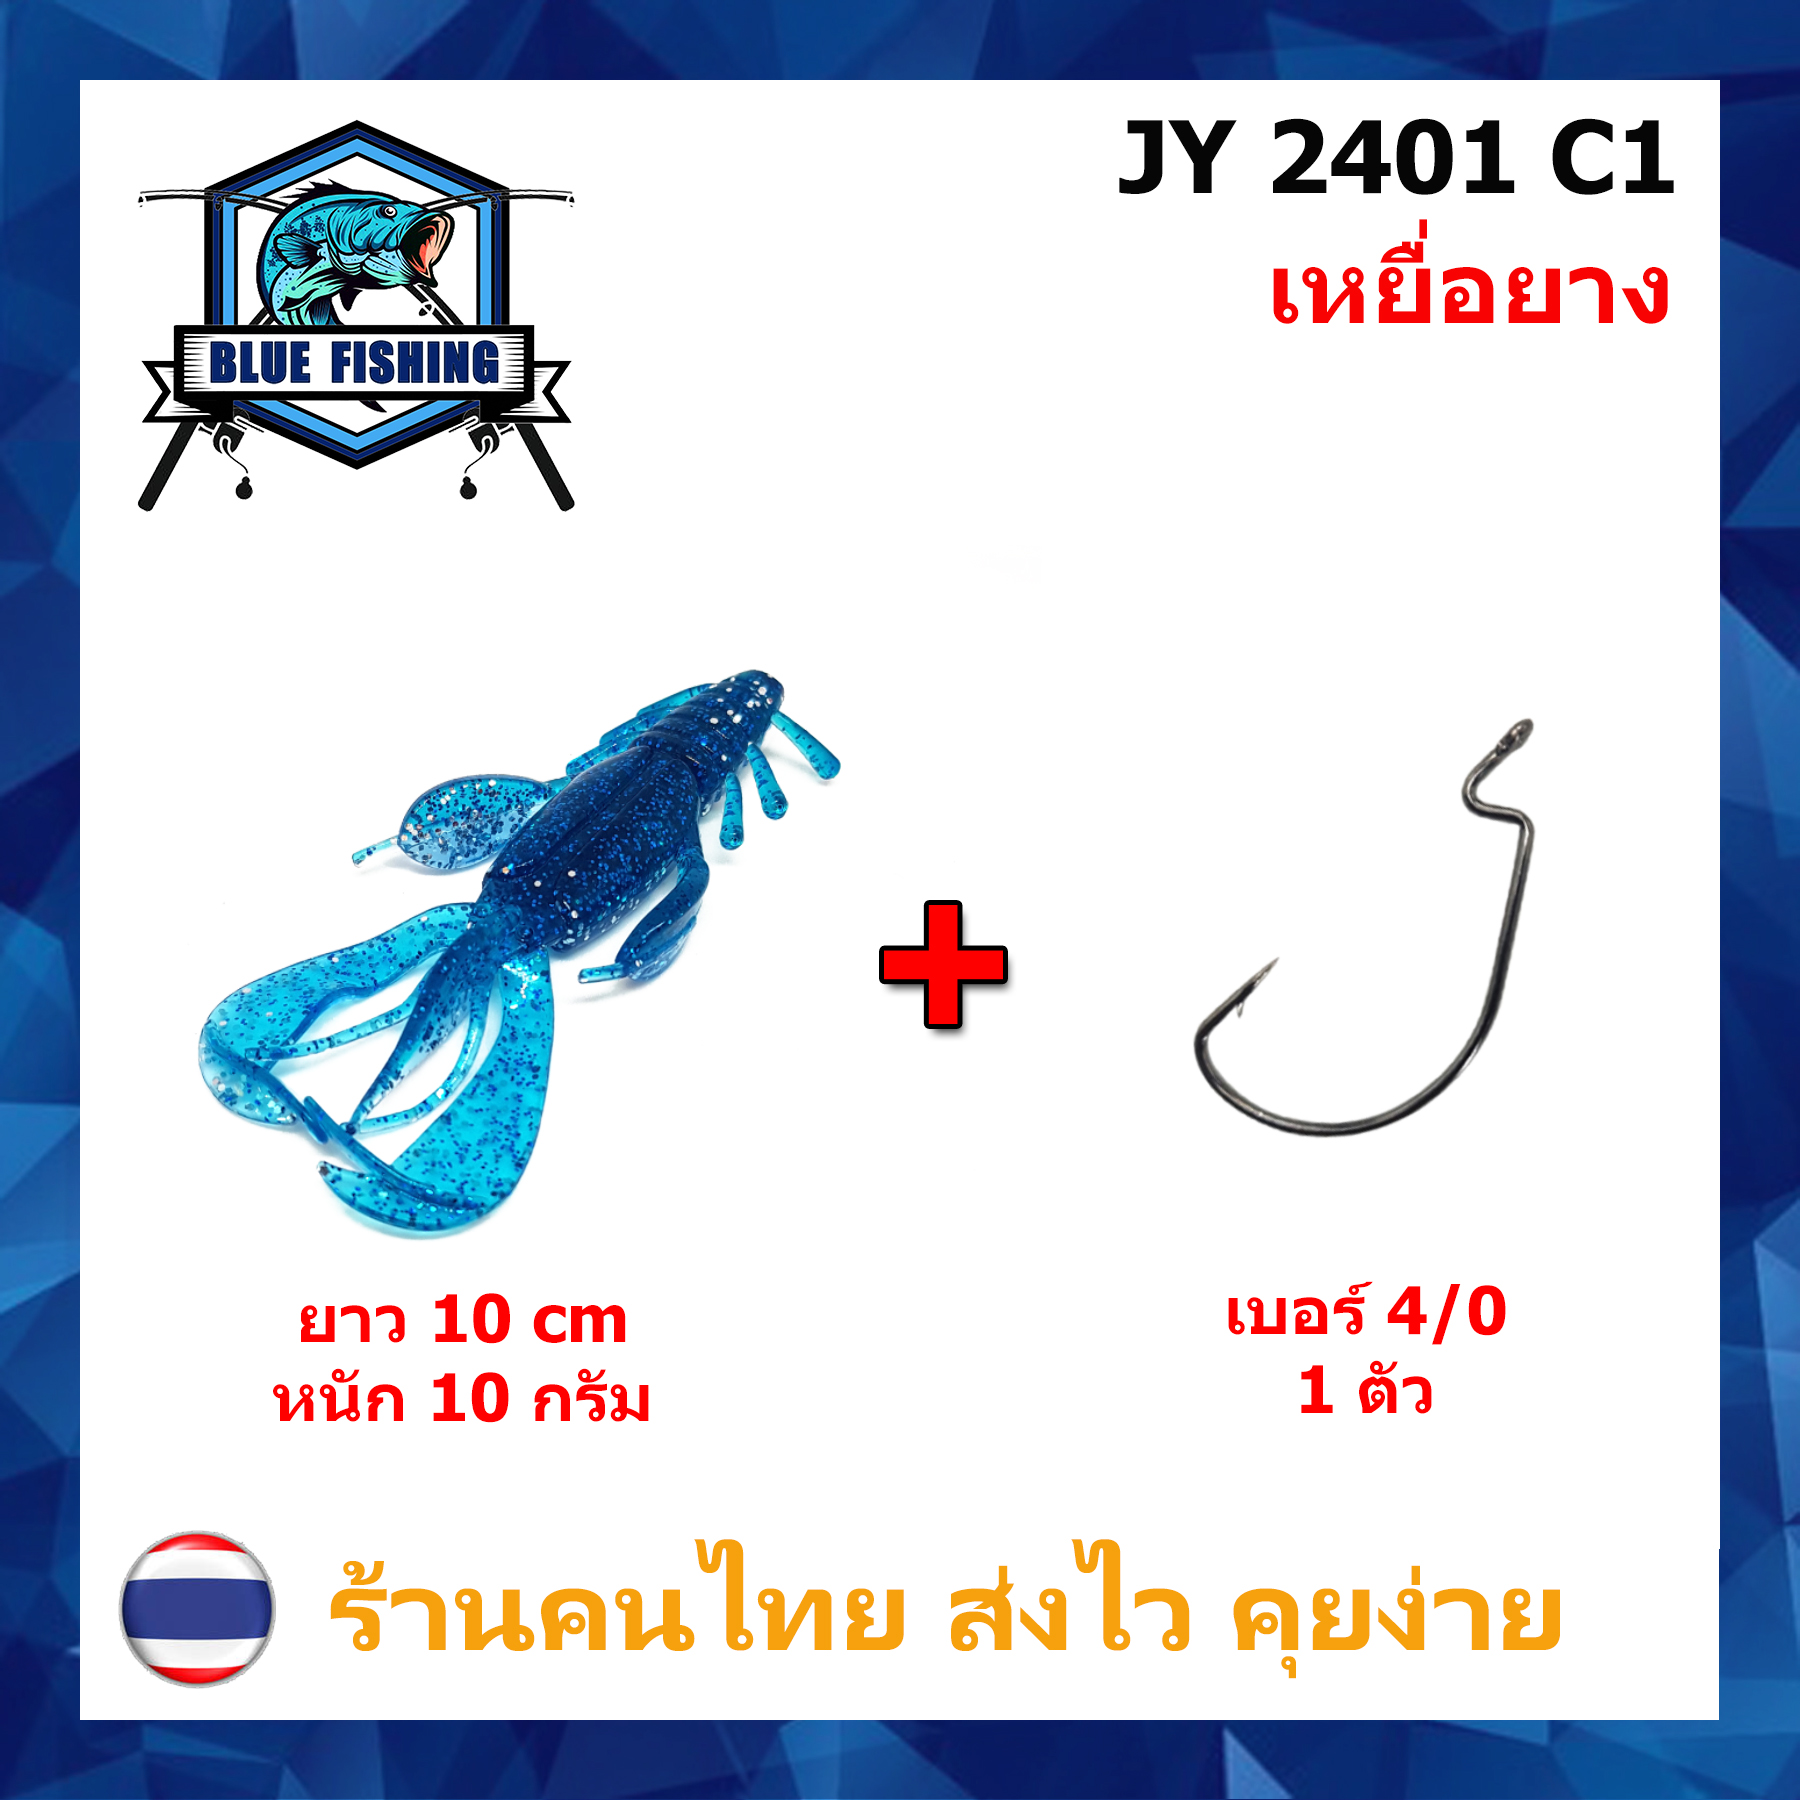 [ Blue Fishing ] (ส่งไว!! มีสินค้าพร้อมส่ง) แมลงยาง หางเพลิง เหยื่อตกปลา เหยื่อปลอม เหยื่อยาง คุณภาพดี ยาว 10 CM หนัก 10 กรัม JY 2401